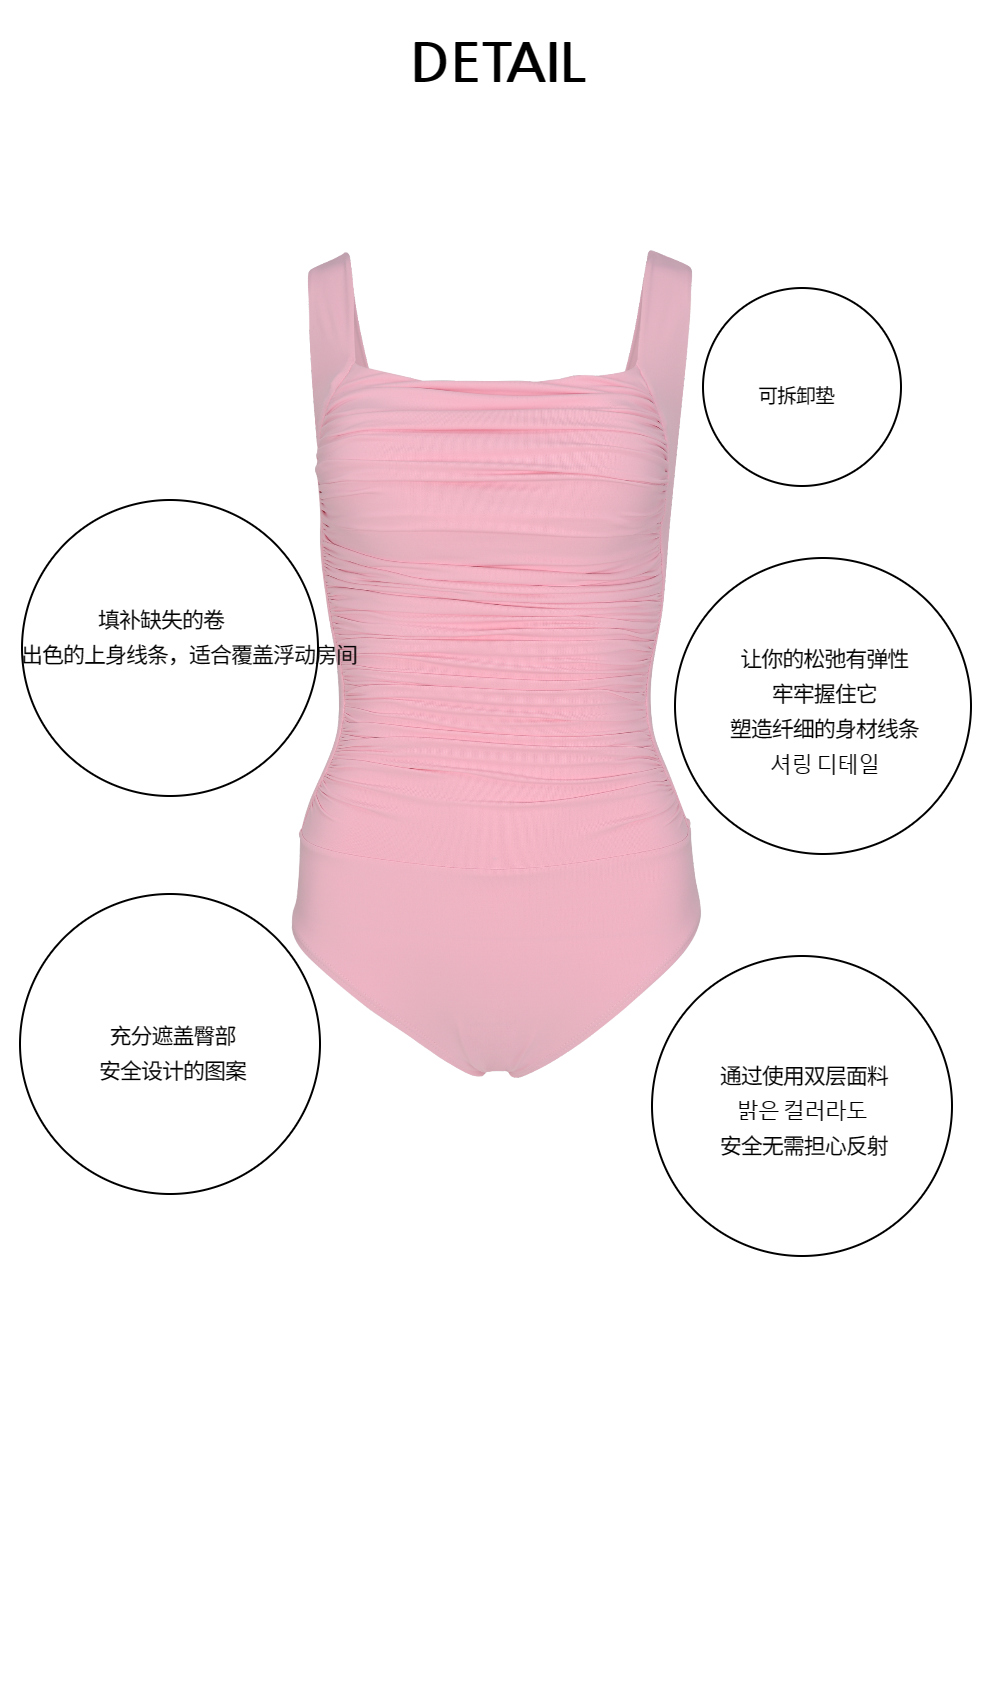 游泳衣/内部磨损 baby pink 彩色图像-S5L29